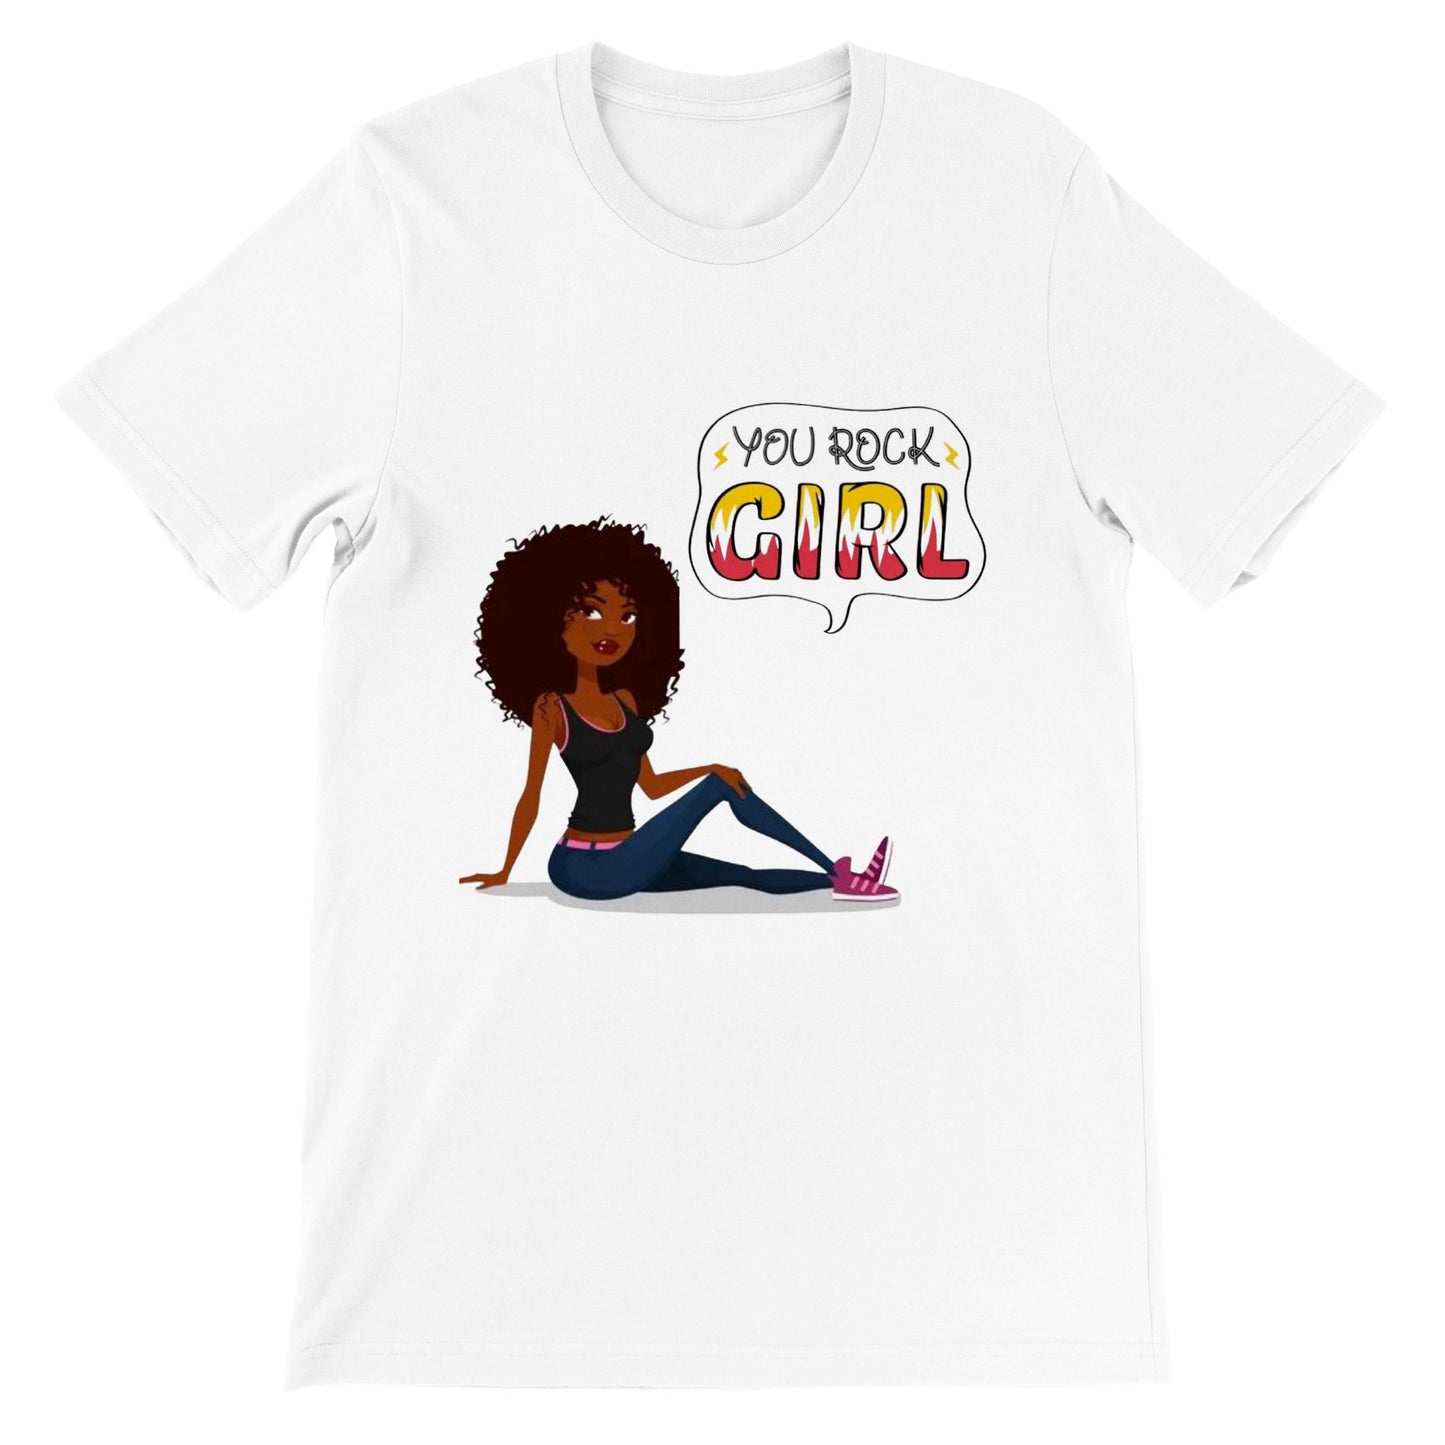 You Rock Girl. Premium Crewneck T-shirt, Women Empowerment Shirt, Fierce Shirt, Black Girl Magic, Strong Women Shirt, Boss, Black Woman, Afro Woman, Black Girl.